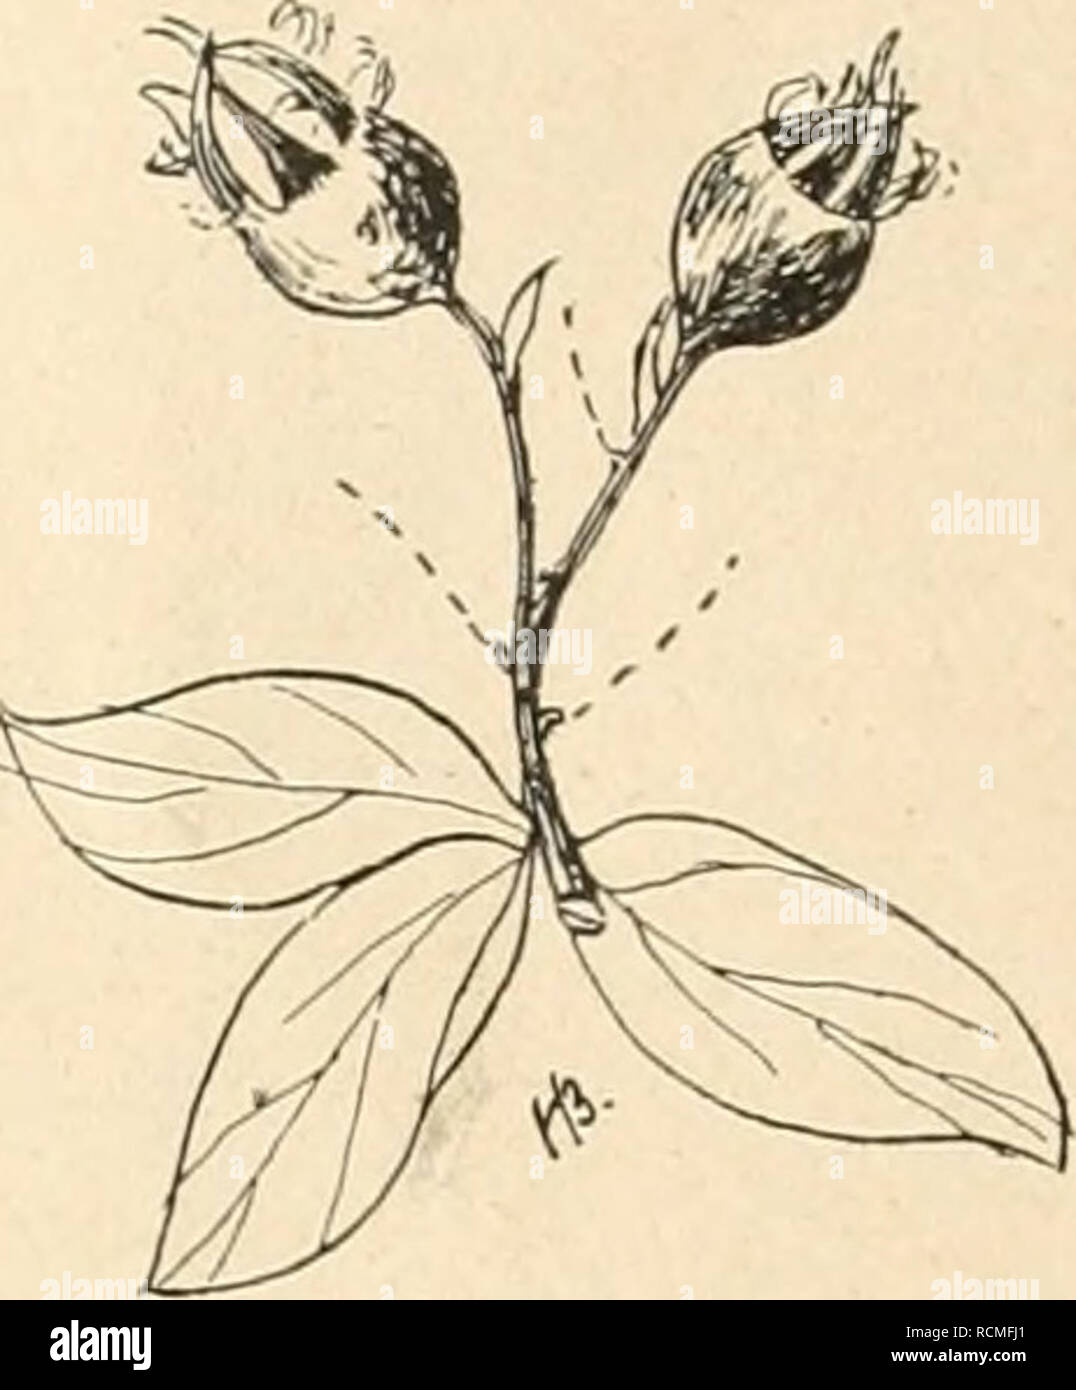 . Die Gartenwelt. Gardening. Fig. 2 A. Crataegomespilus Dardari BlÃ¼tenzweig (','-, nat. Gr.) SterilitÃ¤t darin zu erblicken ist, daÃ das Meri- stem des Ve- getationskegels der Mischlinge vegetativen Ur- sprungs ist, be- dÃ¼rfte wohl auÃer anderem noch der wei- teren KlÃ¤rung. Magnolia Kobus D. C. (Hierzu die Abb. der Titelseite.) Eine in Japan heimische Art, dort in der Ebene. Fig. 2B. Zweig mit FrÃ¼chten (Vr, nat. Gr.) wie auch im Gebirge vorkommend, und schÃ¶n gebaute, bis 20 m hohe BÃ¤ume bildend. Sie ist auch fÃ¼r unsere GÃ¤rten ein sehr brauchbarer und dankbarer BlÃ¼ten- baum oder -Strau Stock Photo